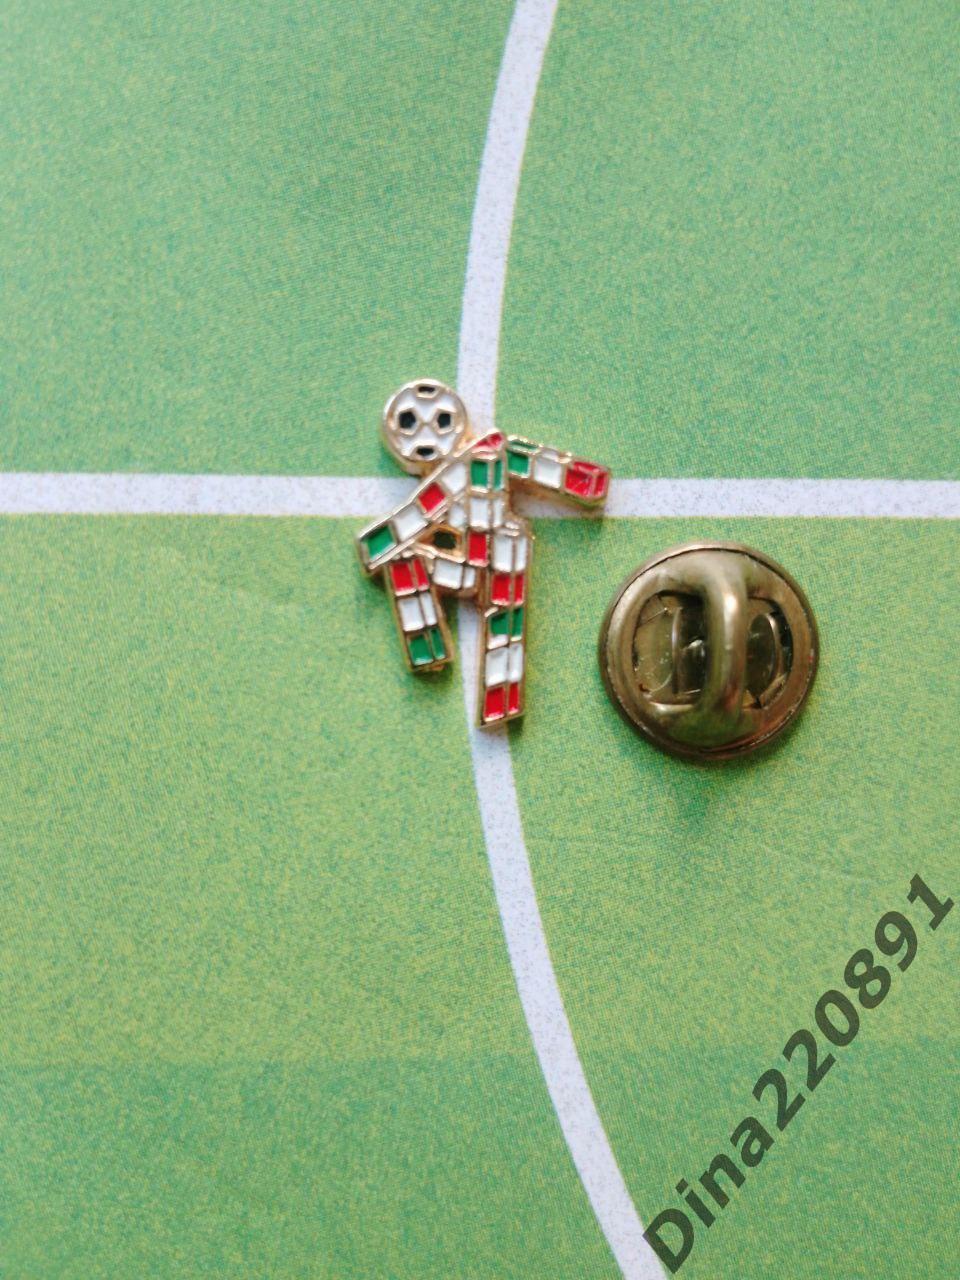 Чемпионат мира по футболу, ИТАЛИЯ 1990, официальный талисман/маскот.